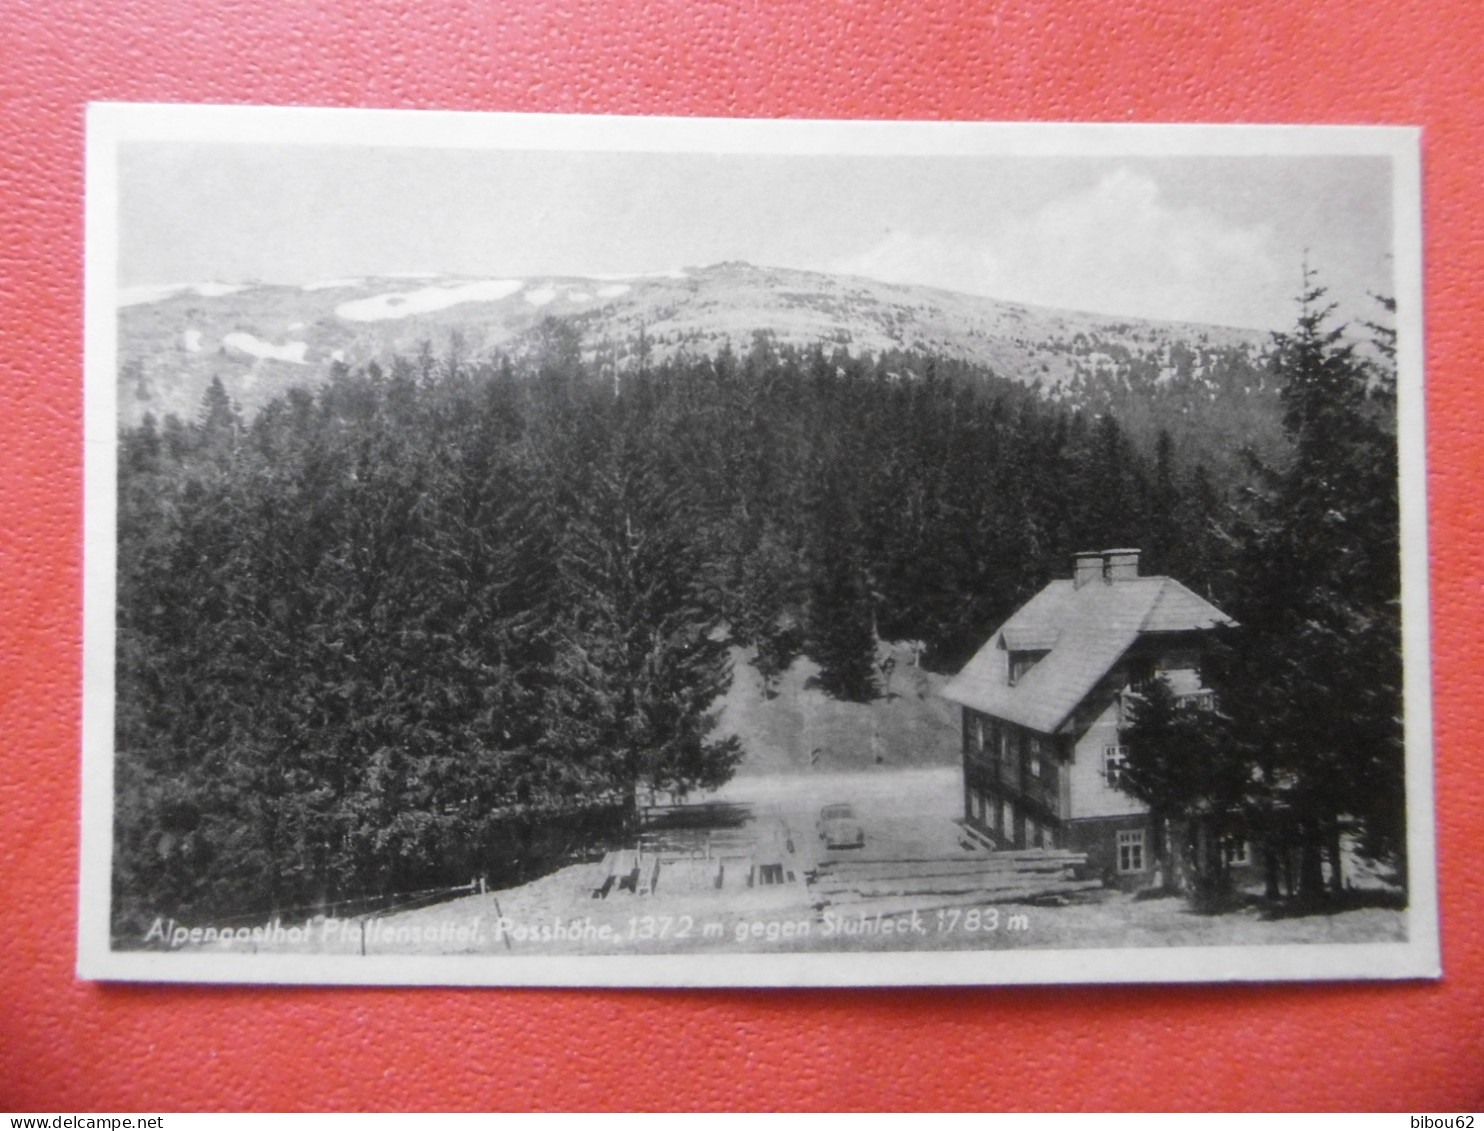 MARIAZELL  ( STYRIE ) Alpengasthof Pfallensallel - Passhohe - 1372 M Gegen Stuhleck - 1783 M - Mariazell